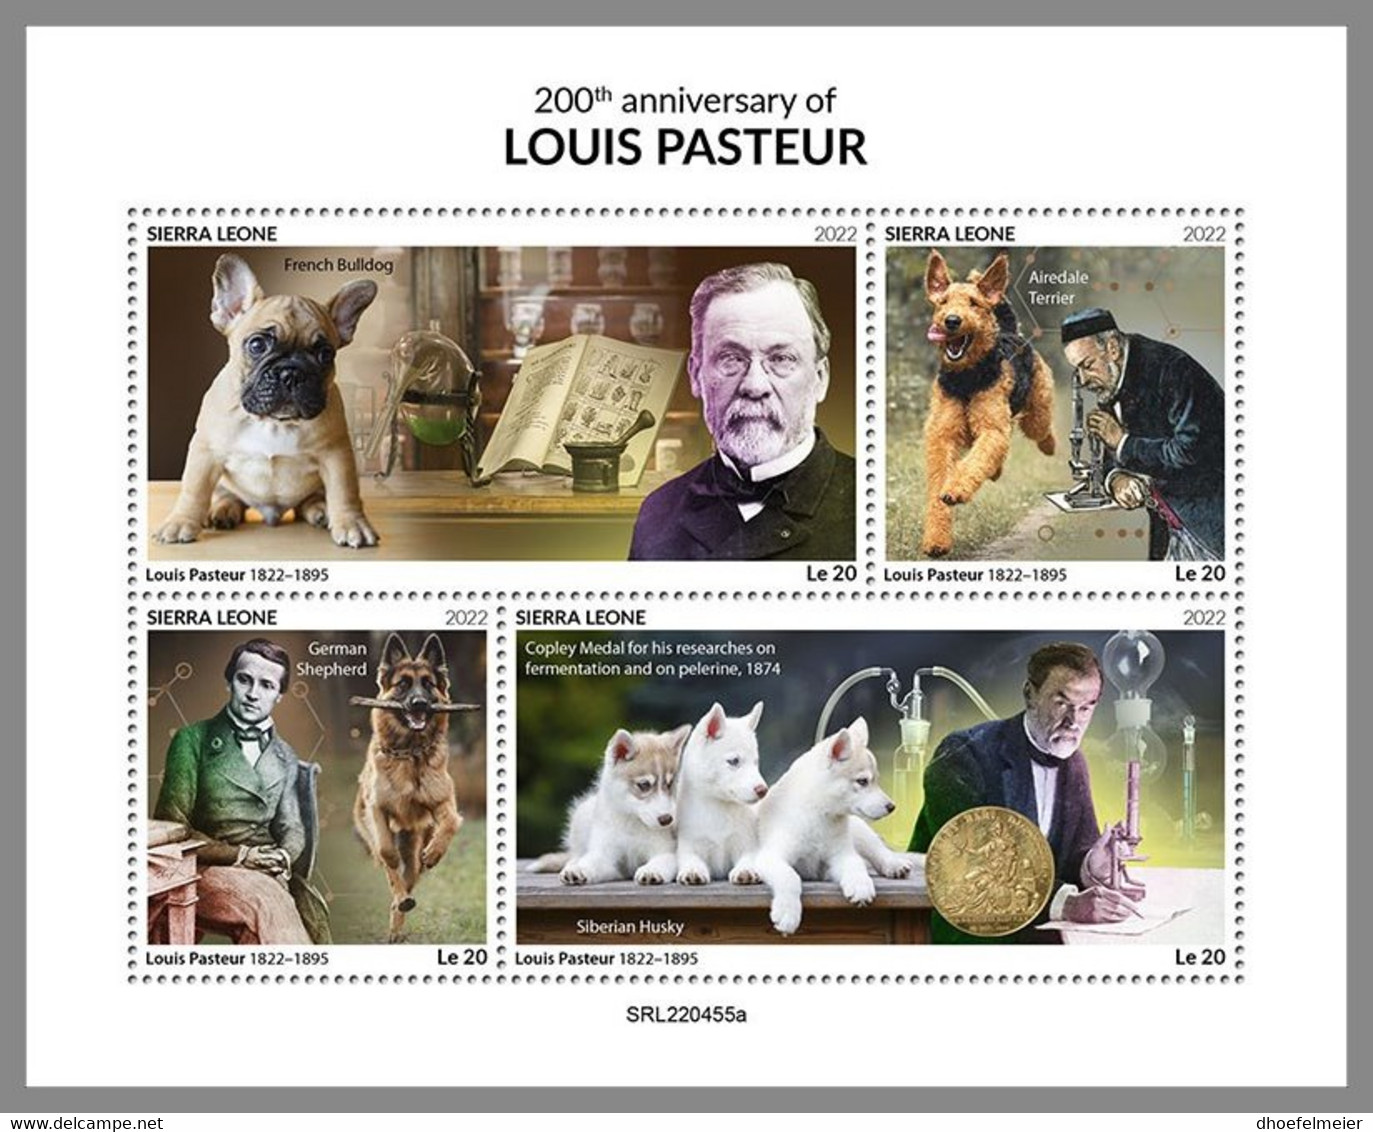 SIERRA LEONE 2022 MNH Louis Pasteur Dogs Hunde Chiens M/S - OFFICIAL ISSUE - DHQ2302 - Louis Pasteur